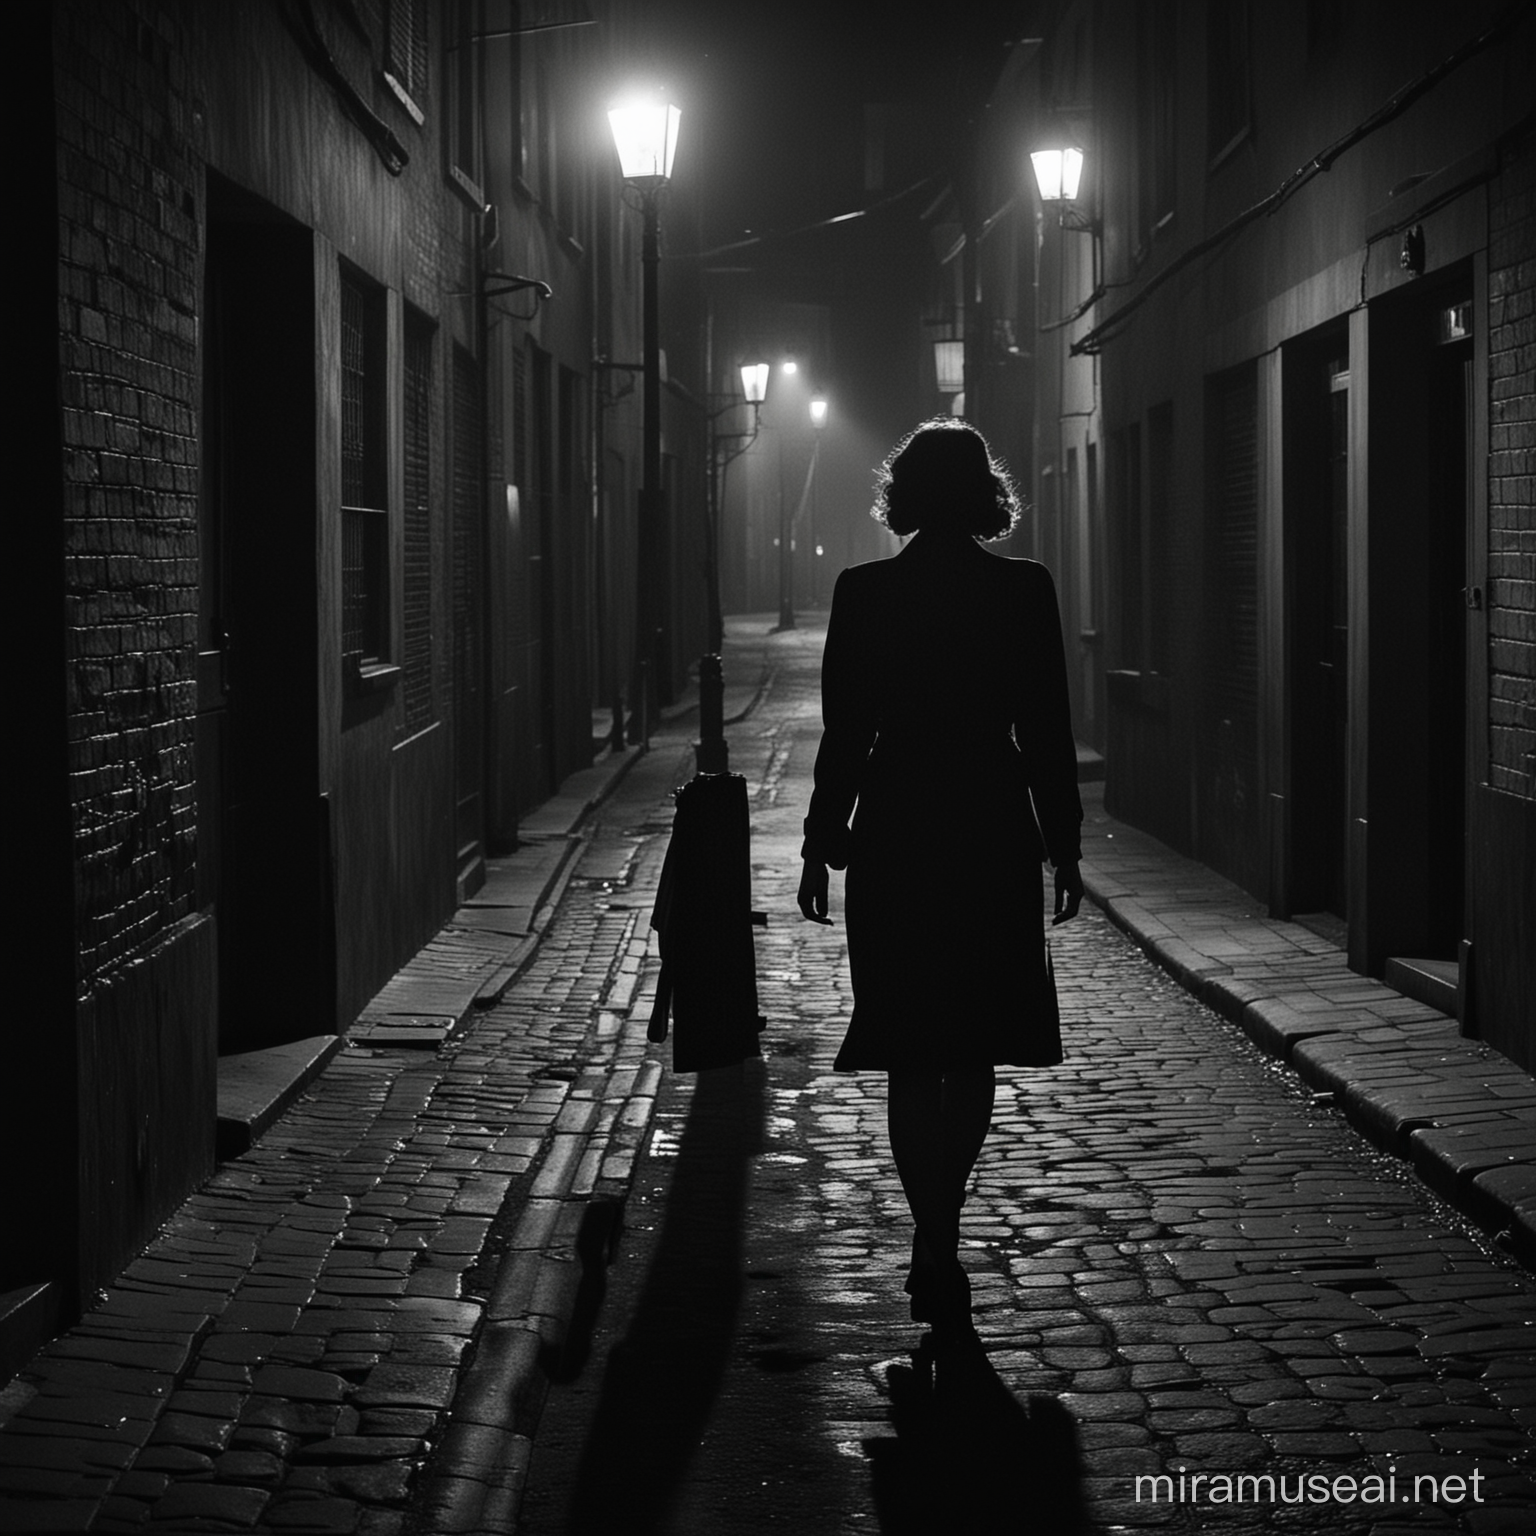 woman in darks street 1940 film noir style retro walking distance


